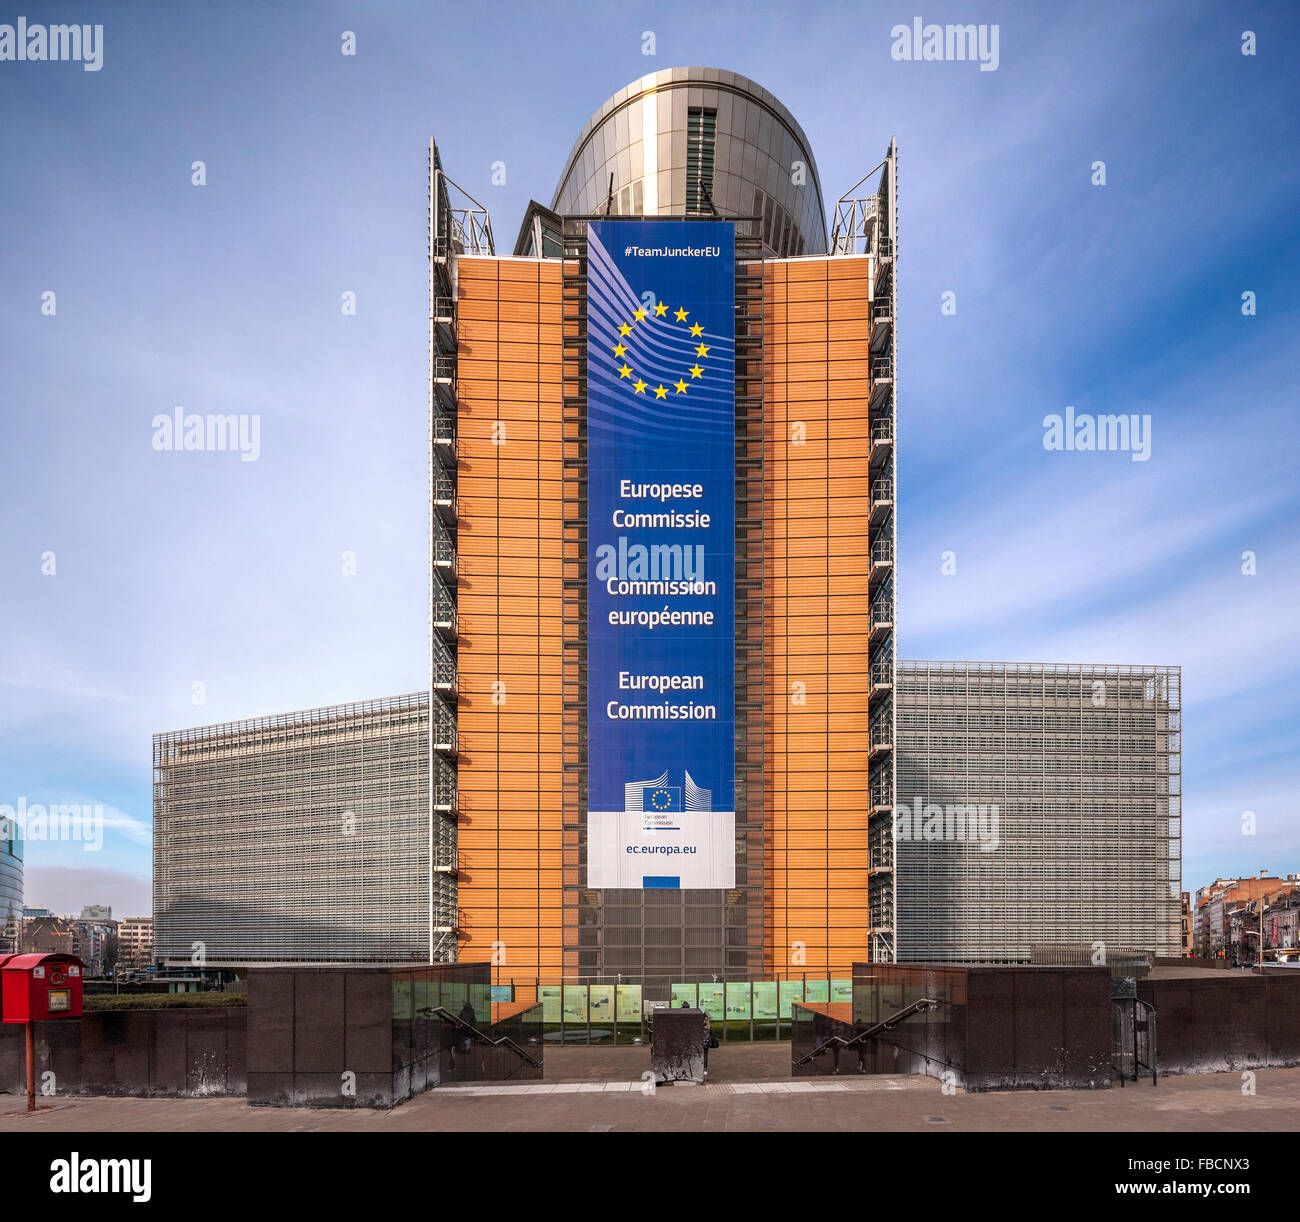 Bruxelles Berlaymont. Siège de la Commission européenne, CE, le conseil exécutif de l'Union européenne, de l'Union européenne. Brussel Bruxelles Belgique Europe Banque D'Images